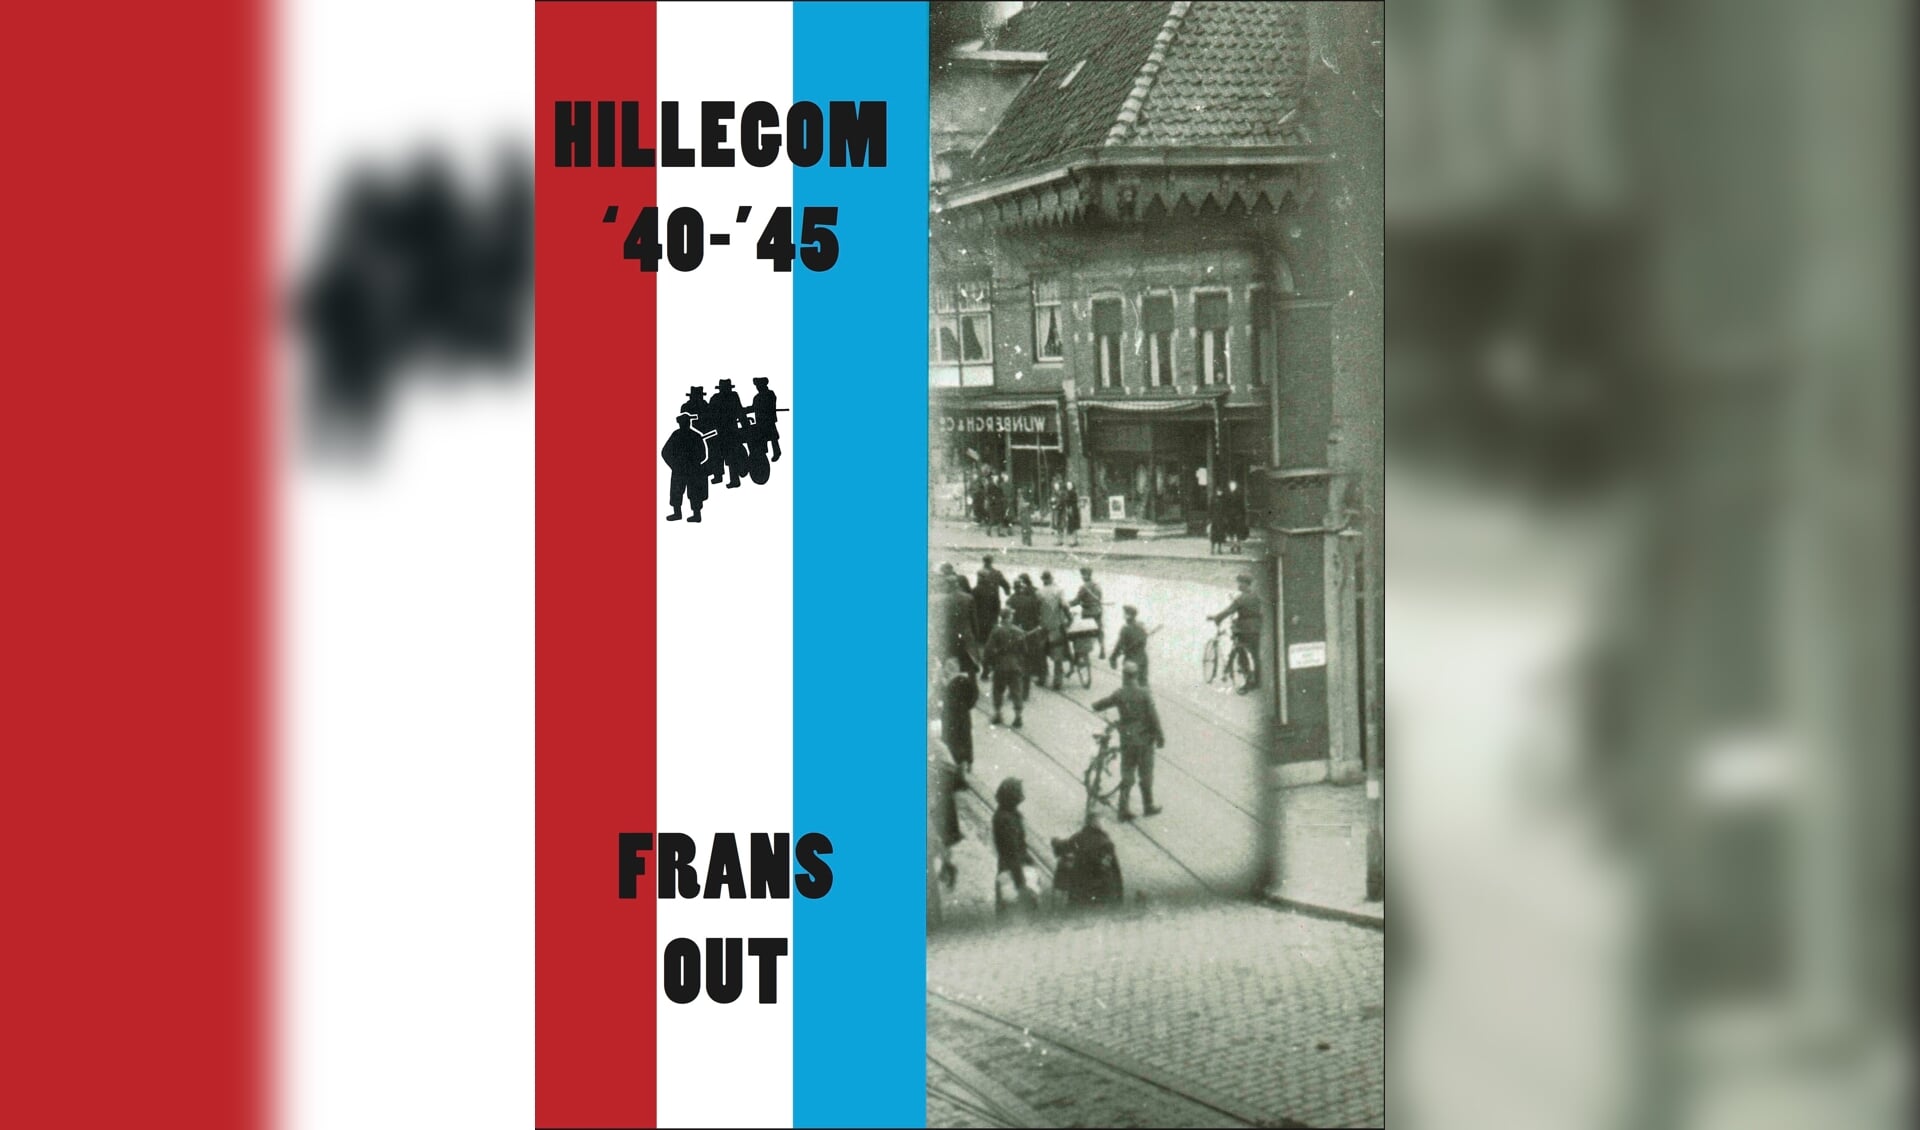 Hillegom '40-‘45” is opnieuw uitgegeven| Foto: SVvOH.